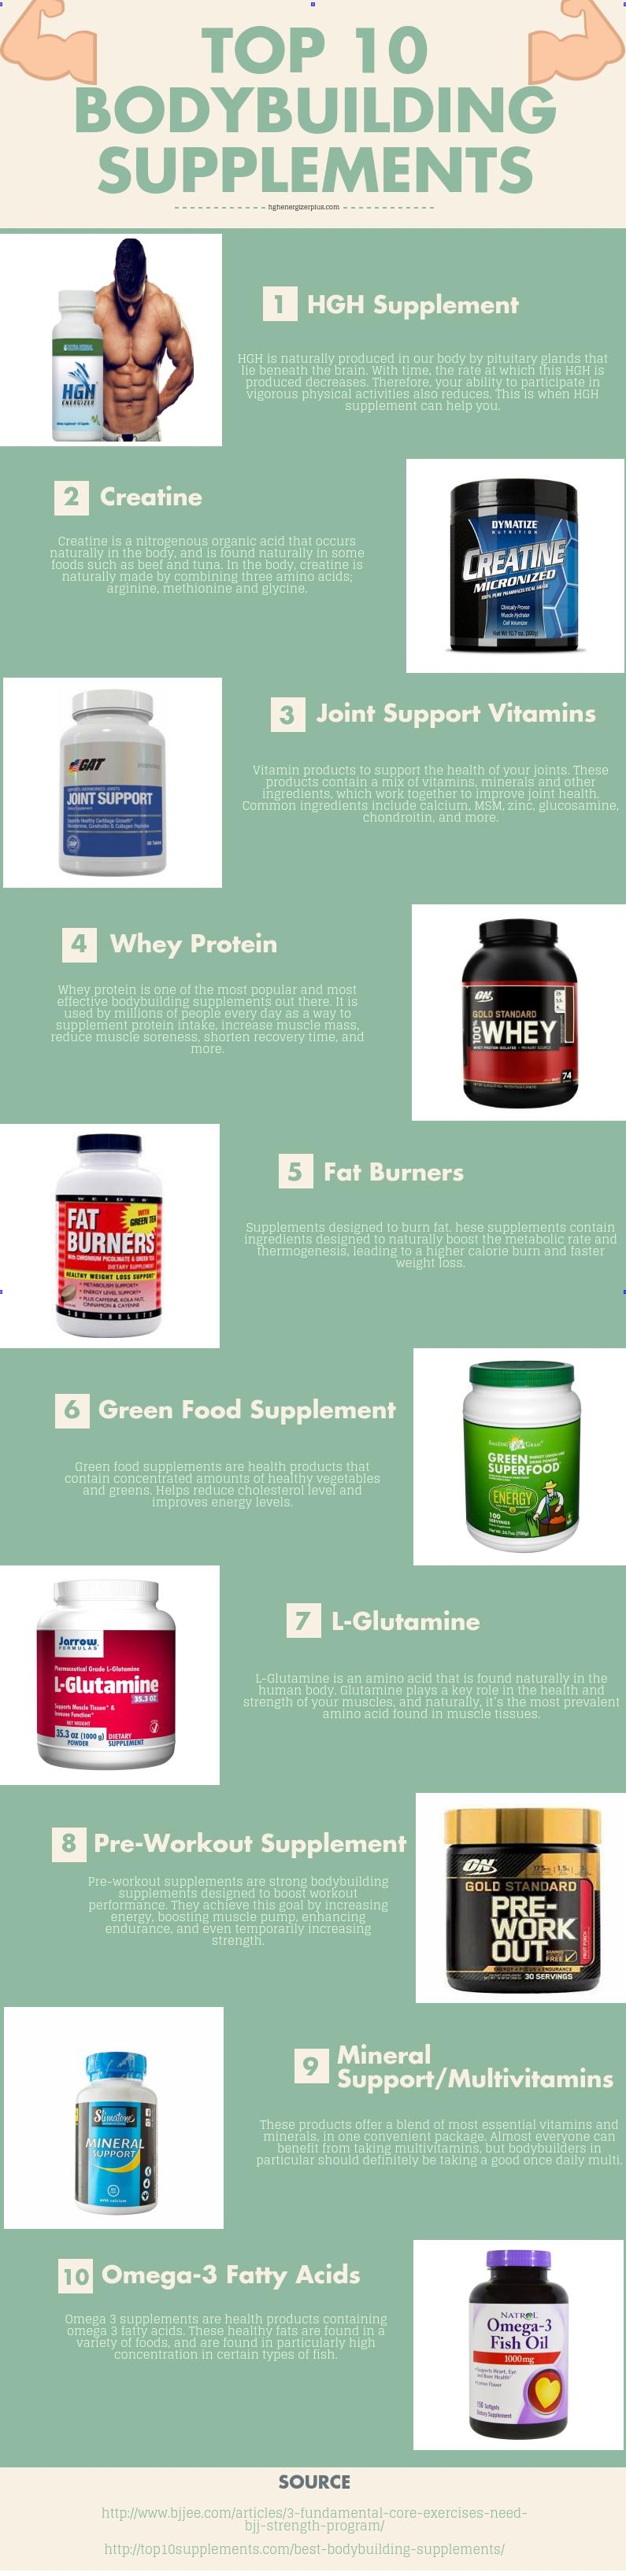 top 10 bodybuilding supplements 